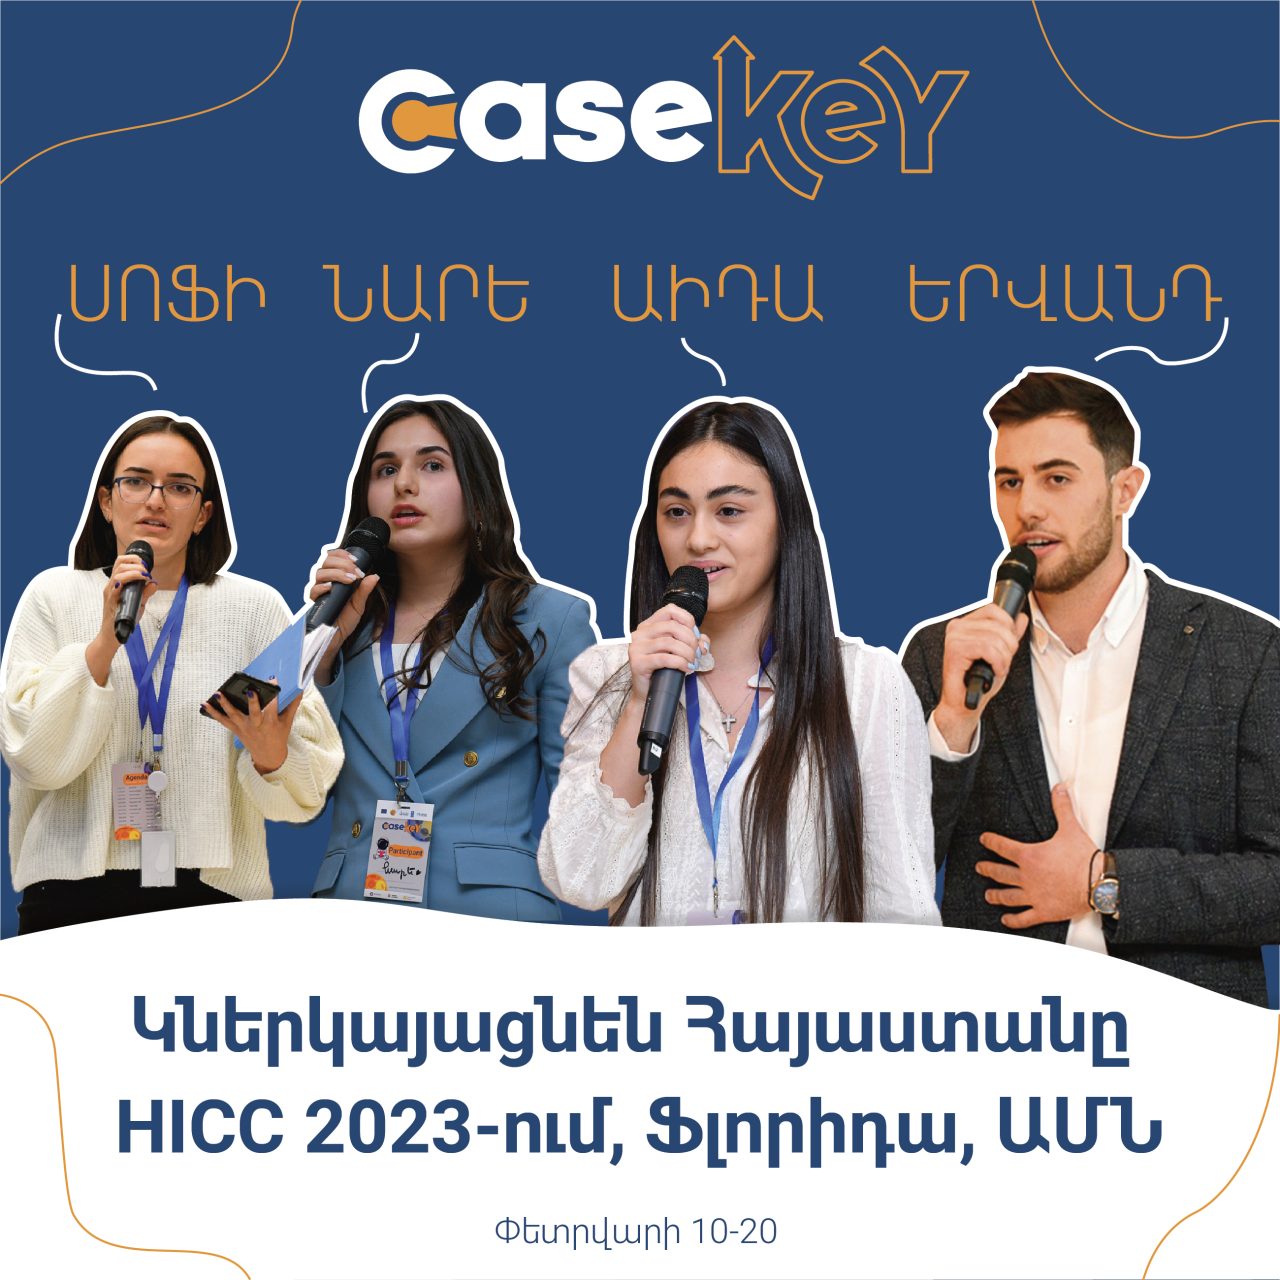 CaseKey. Հայկական թիմը կմասնակցի միջազգային մրցույթին ԱՄՆ-ում